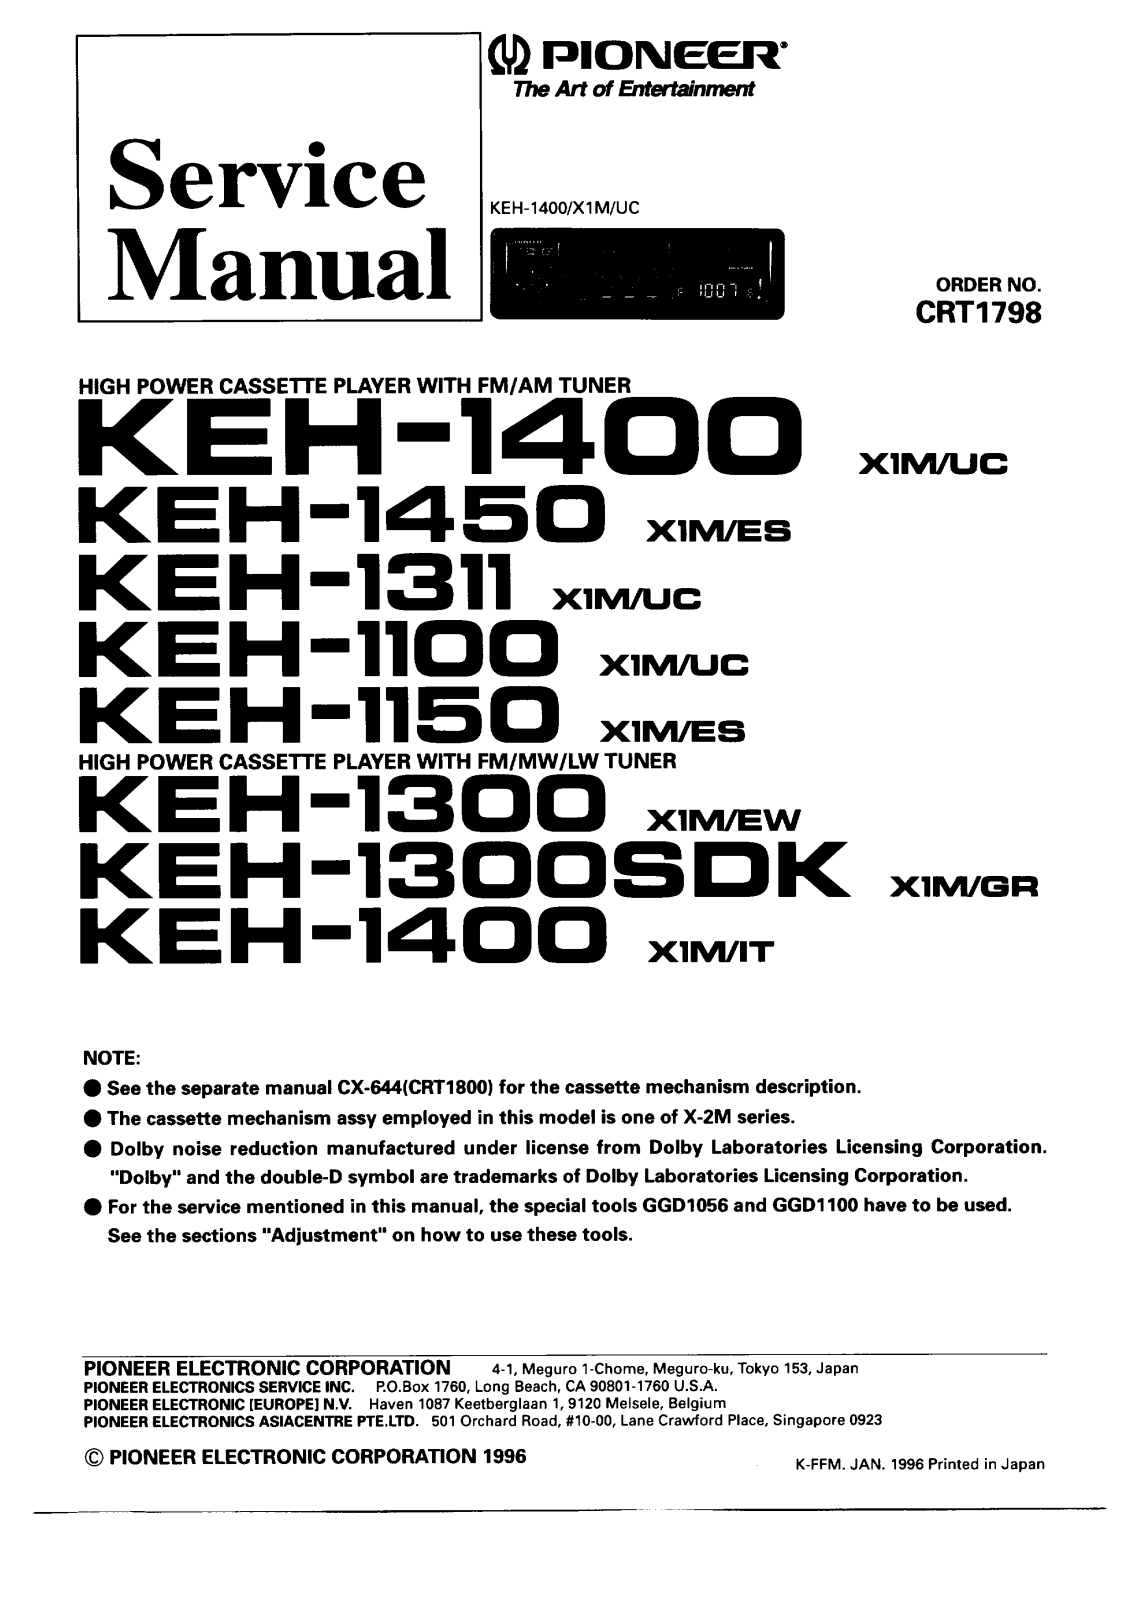 PIONEER KEH-1100, KEH-1150, KEH-1311, KEH-1300, KEH-1400 Service Manual